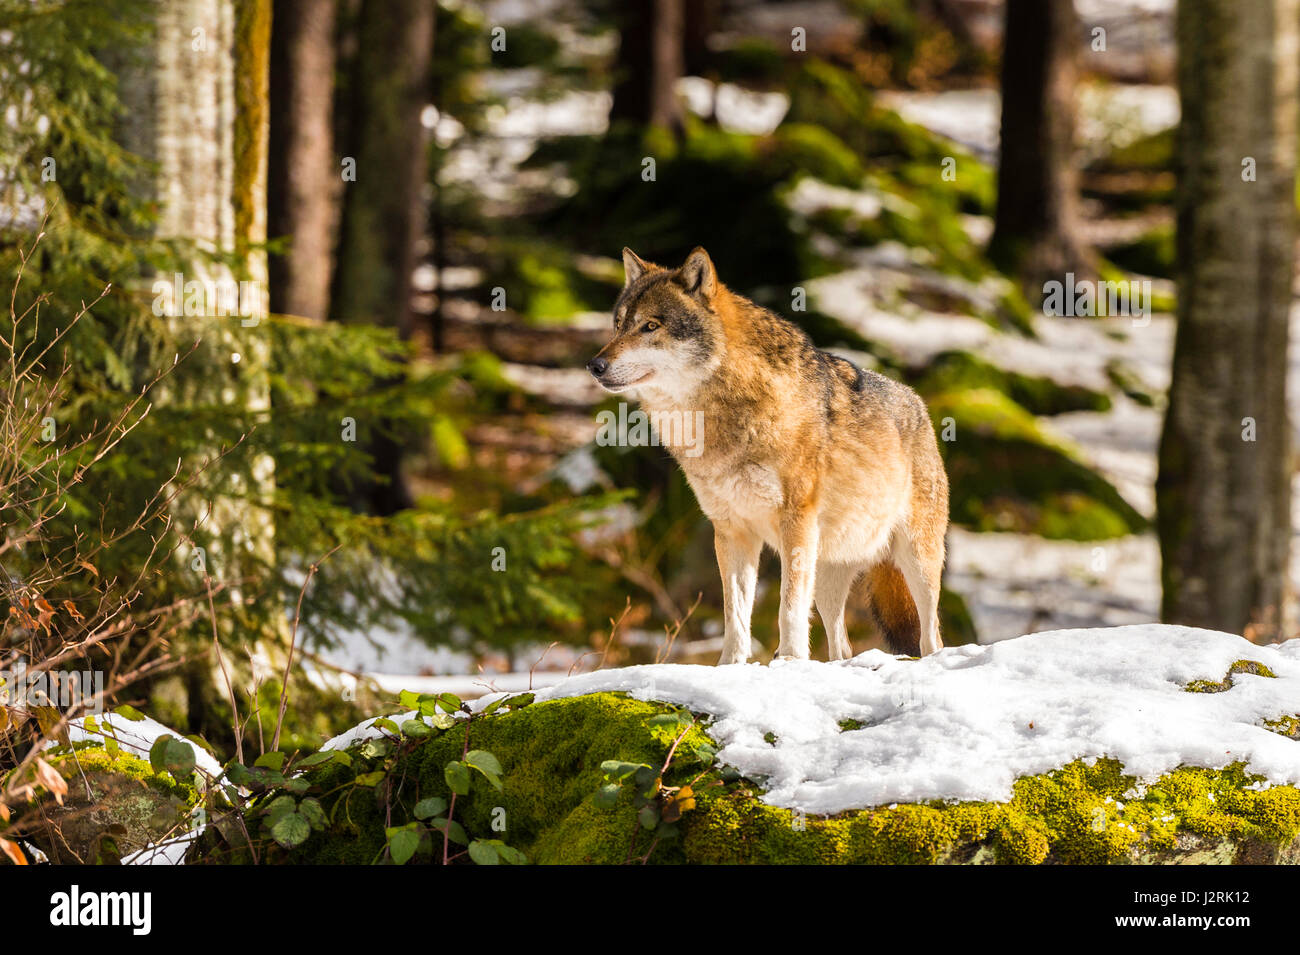 Hermosa solo adulto de lobo gris (Canis lupus) macho alfa representado poses amenazador desde un punto de vista en el bosque cubierto de nieve en pleno invierno. Foto de stock